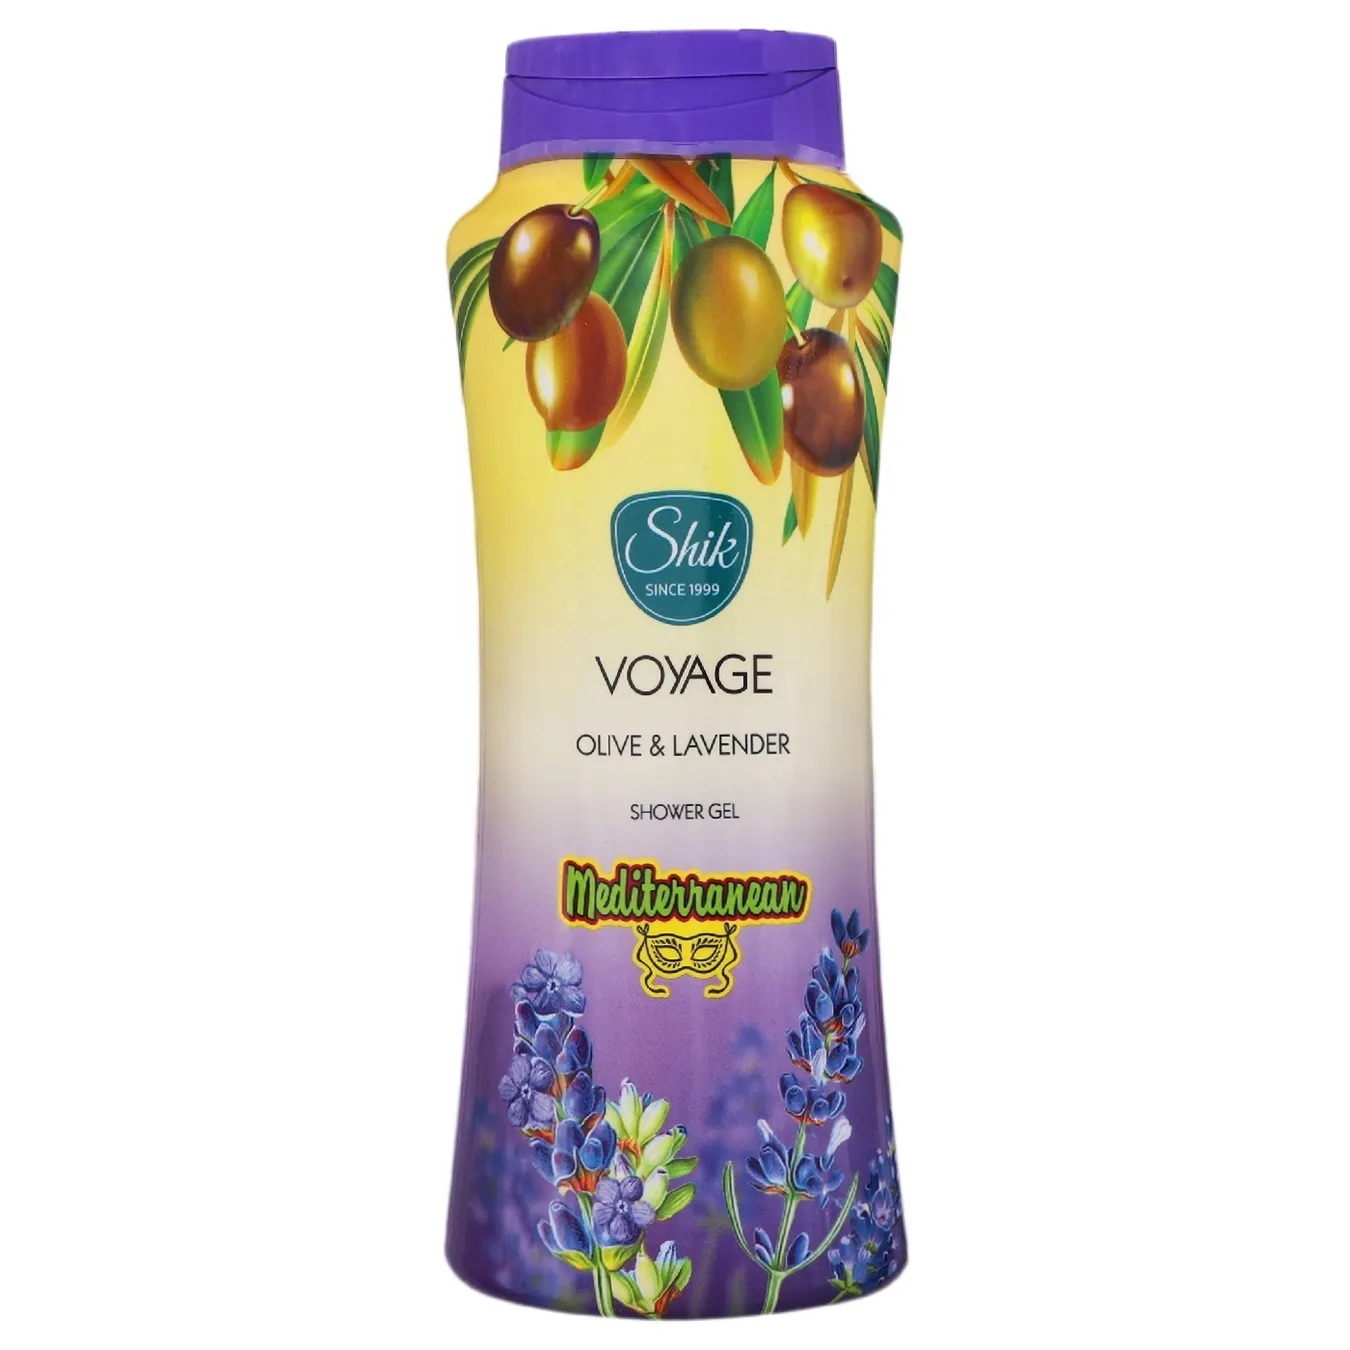 Shik Shower gel Voyage Olive & Lavender 600 ml